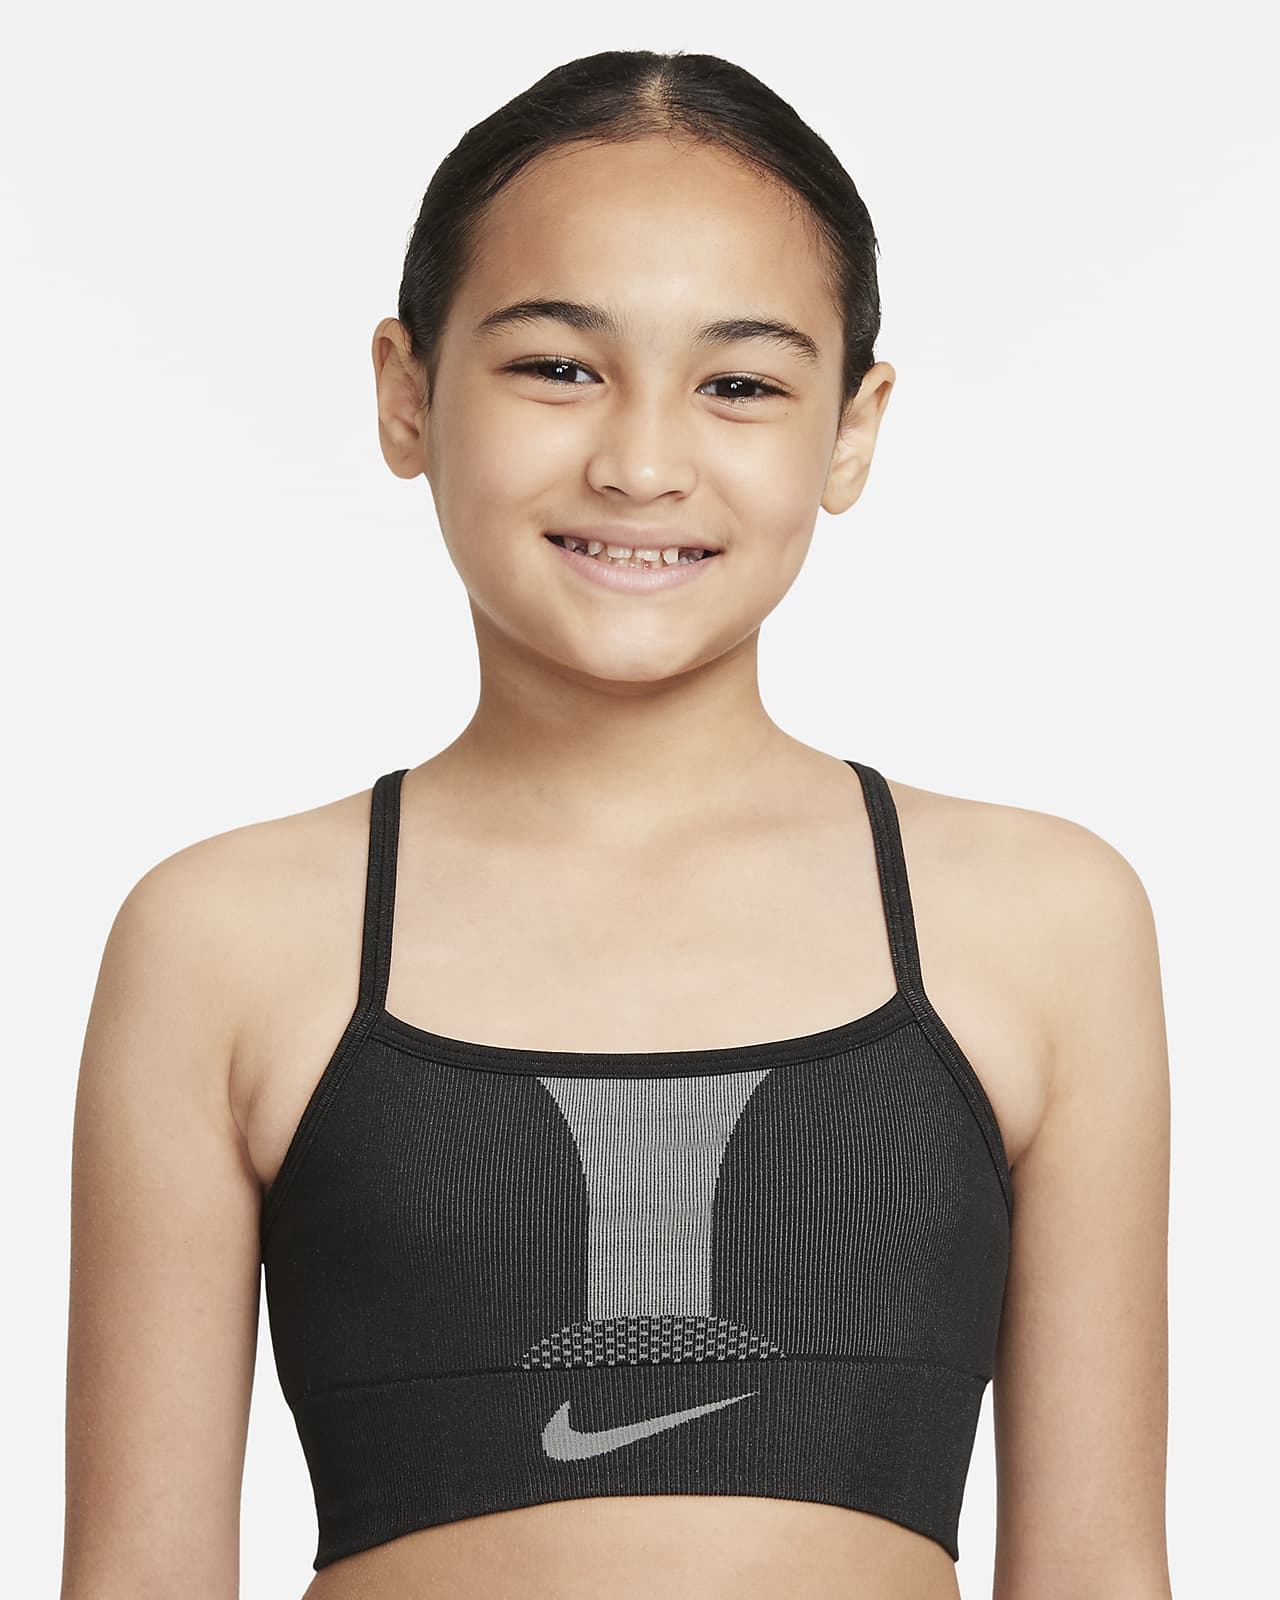 สปอร์ตบราเด็กโต Nike Indy (หญิง)